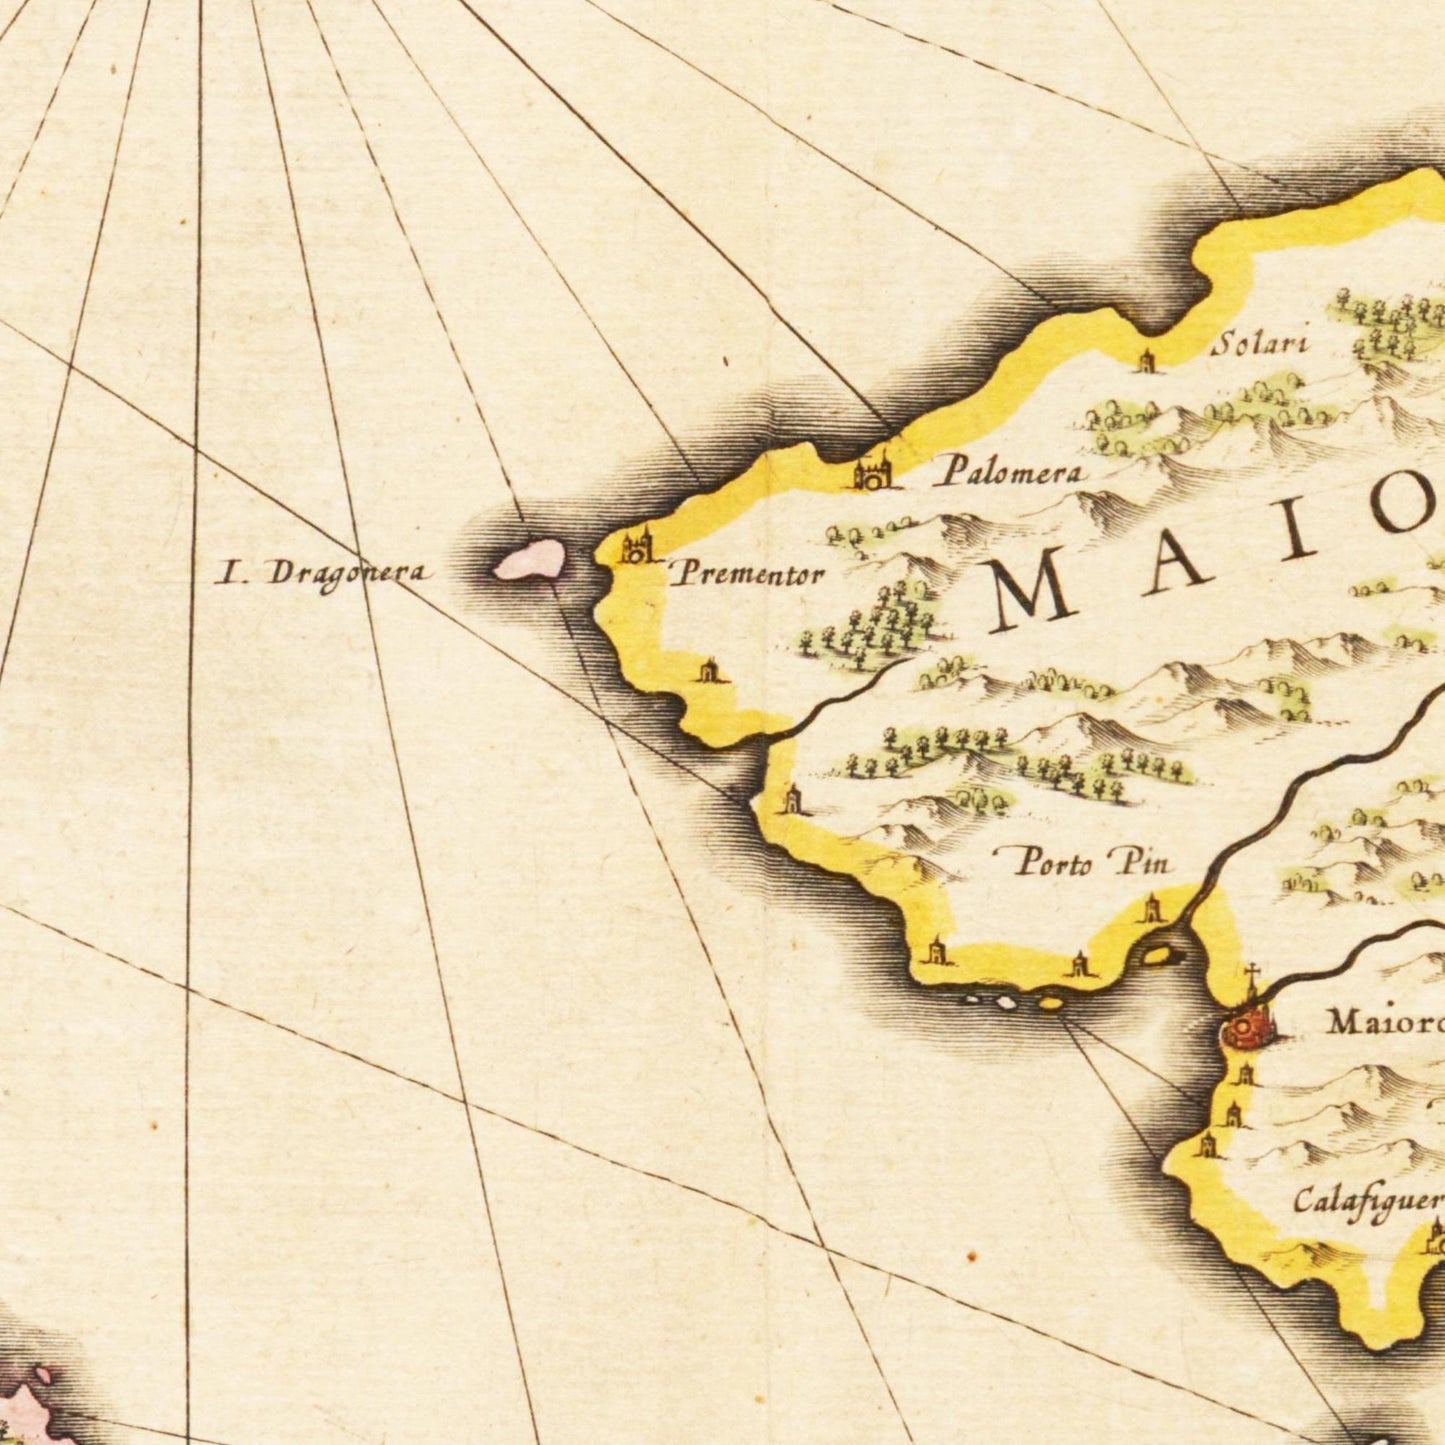 Historische Landkarte Balearische Inseln um 1635